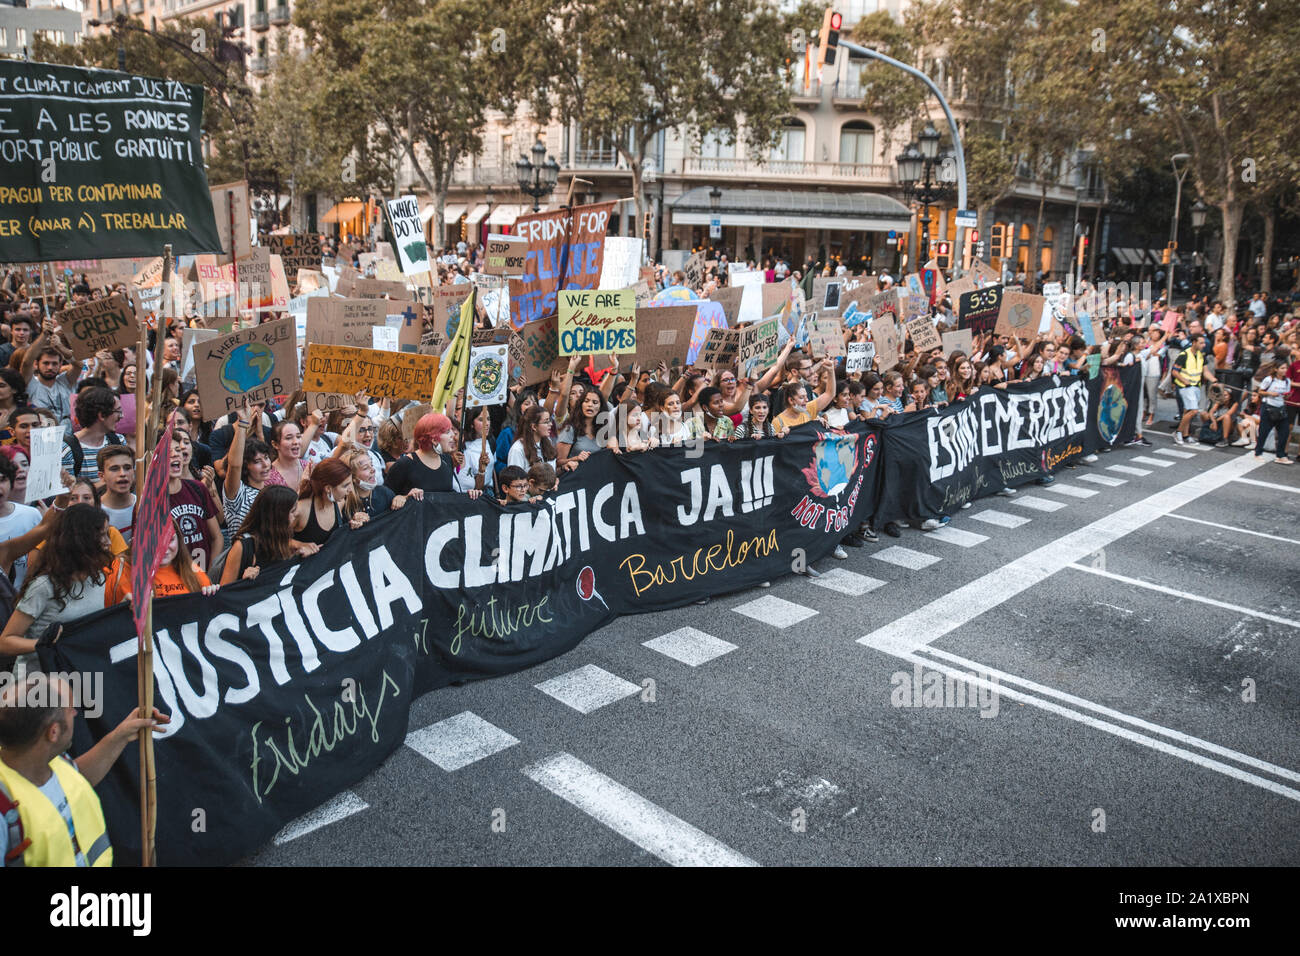 Unas 20.000 personas se manifestaron el pasado viernes 27 de Septiembre en contra de la inactividad de los gobiernos respeto al cambio climático. Stock Photo